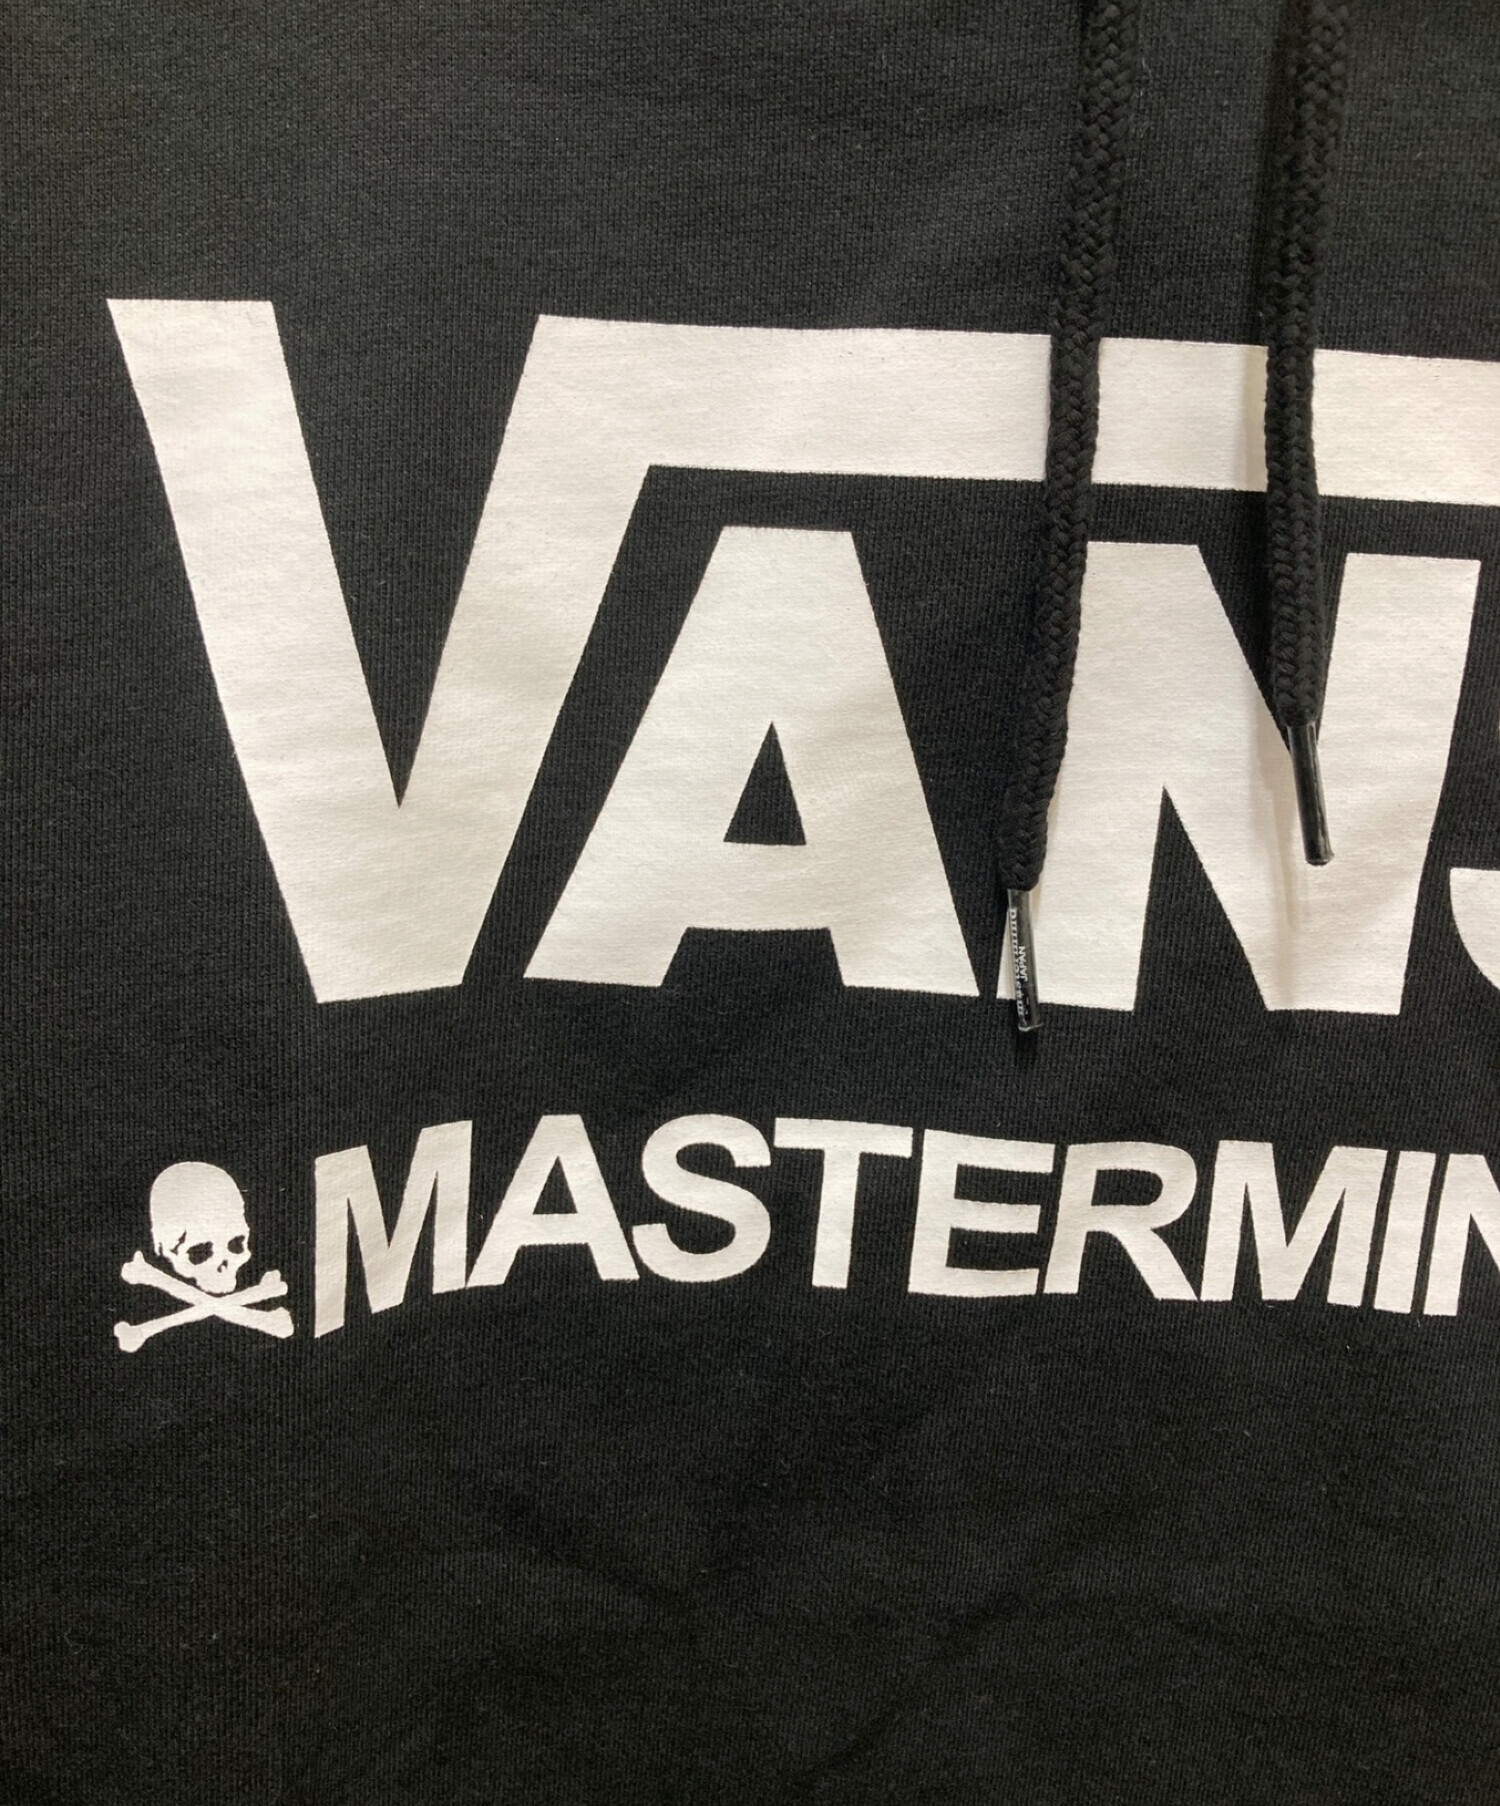 VANS (ヴァンズ) Mastermind JAPAN (マスターマインド ジャパン) プリントパーカー ブラック サイズ:L